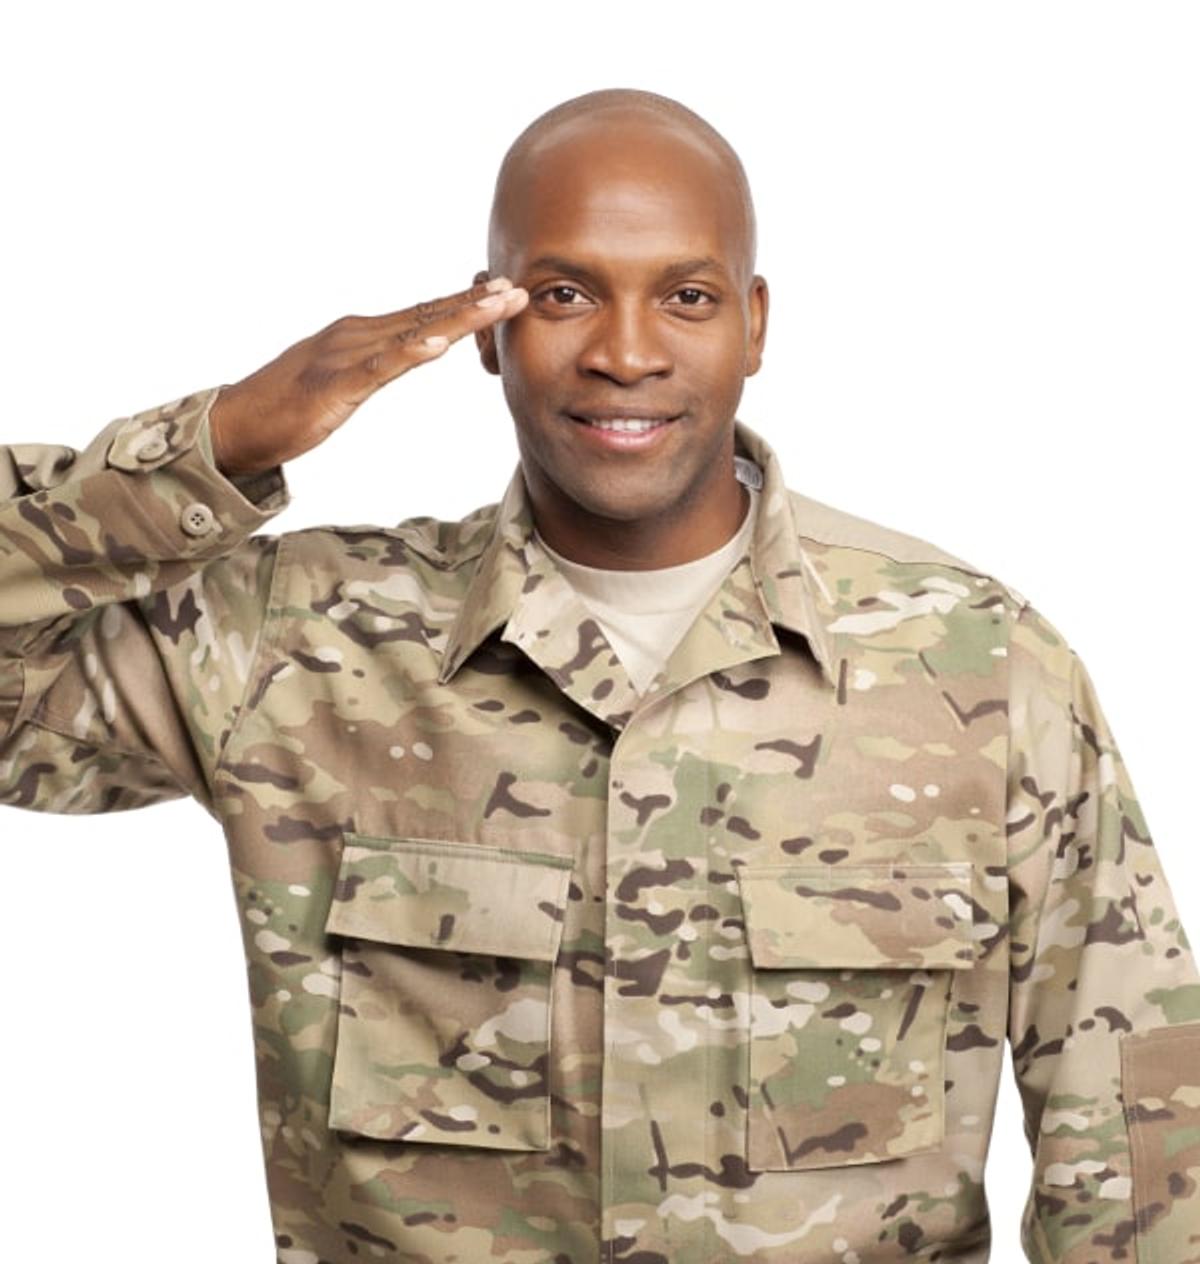 Military Member saluting.